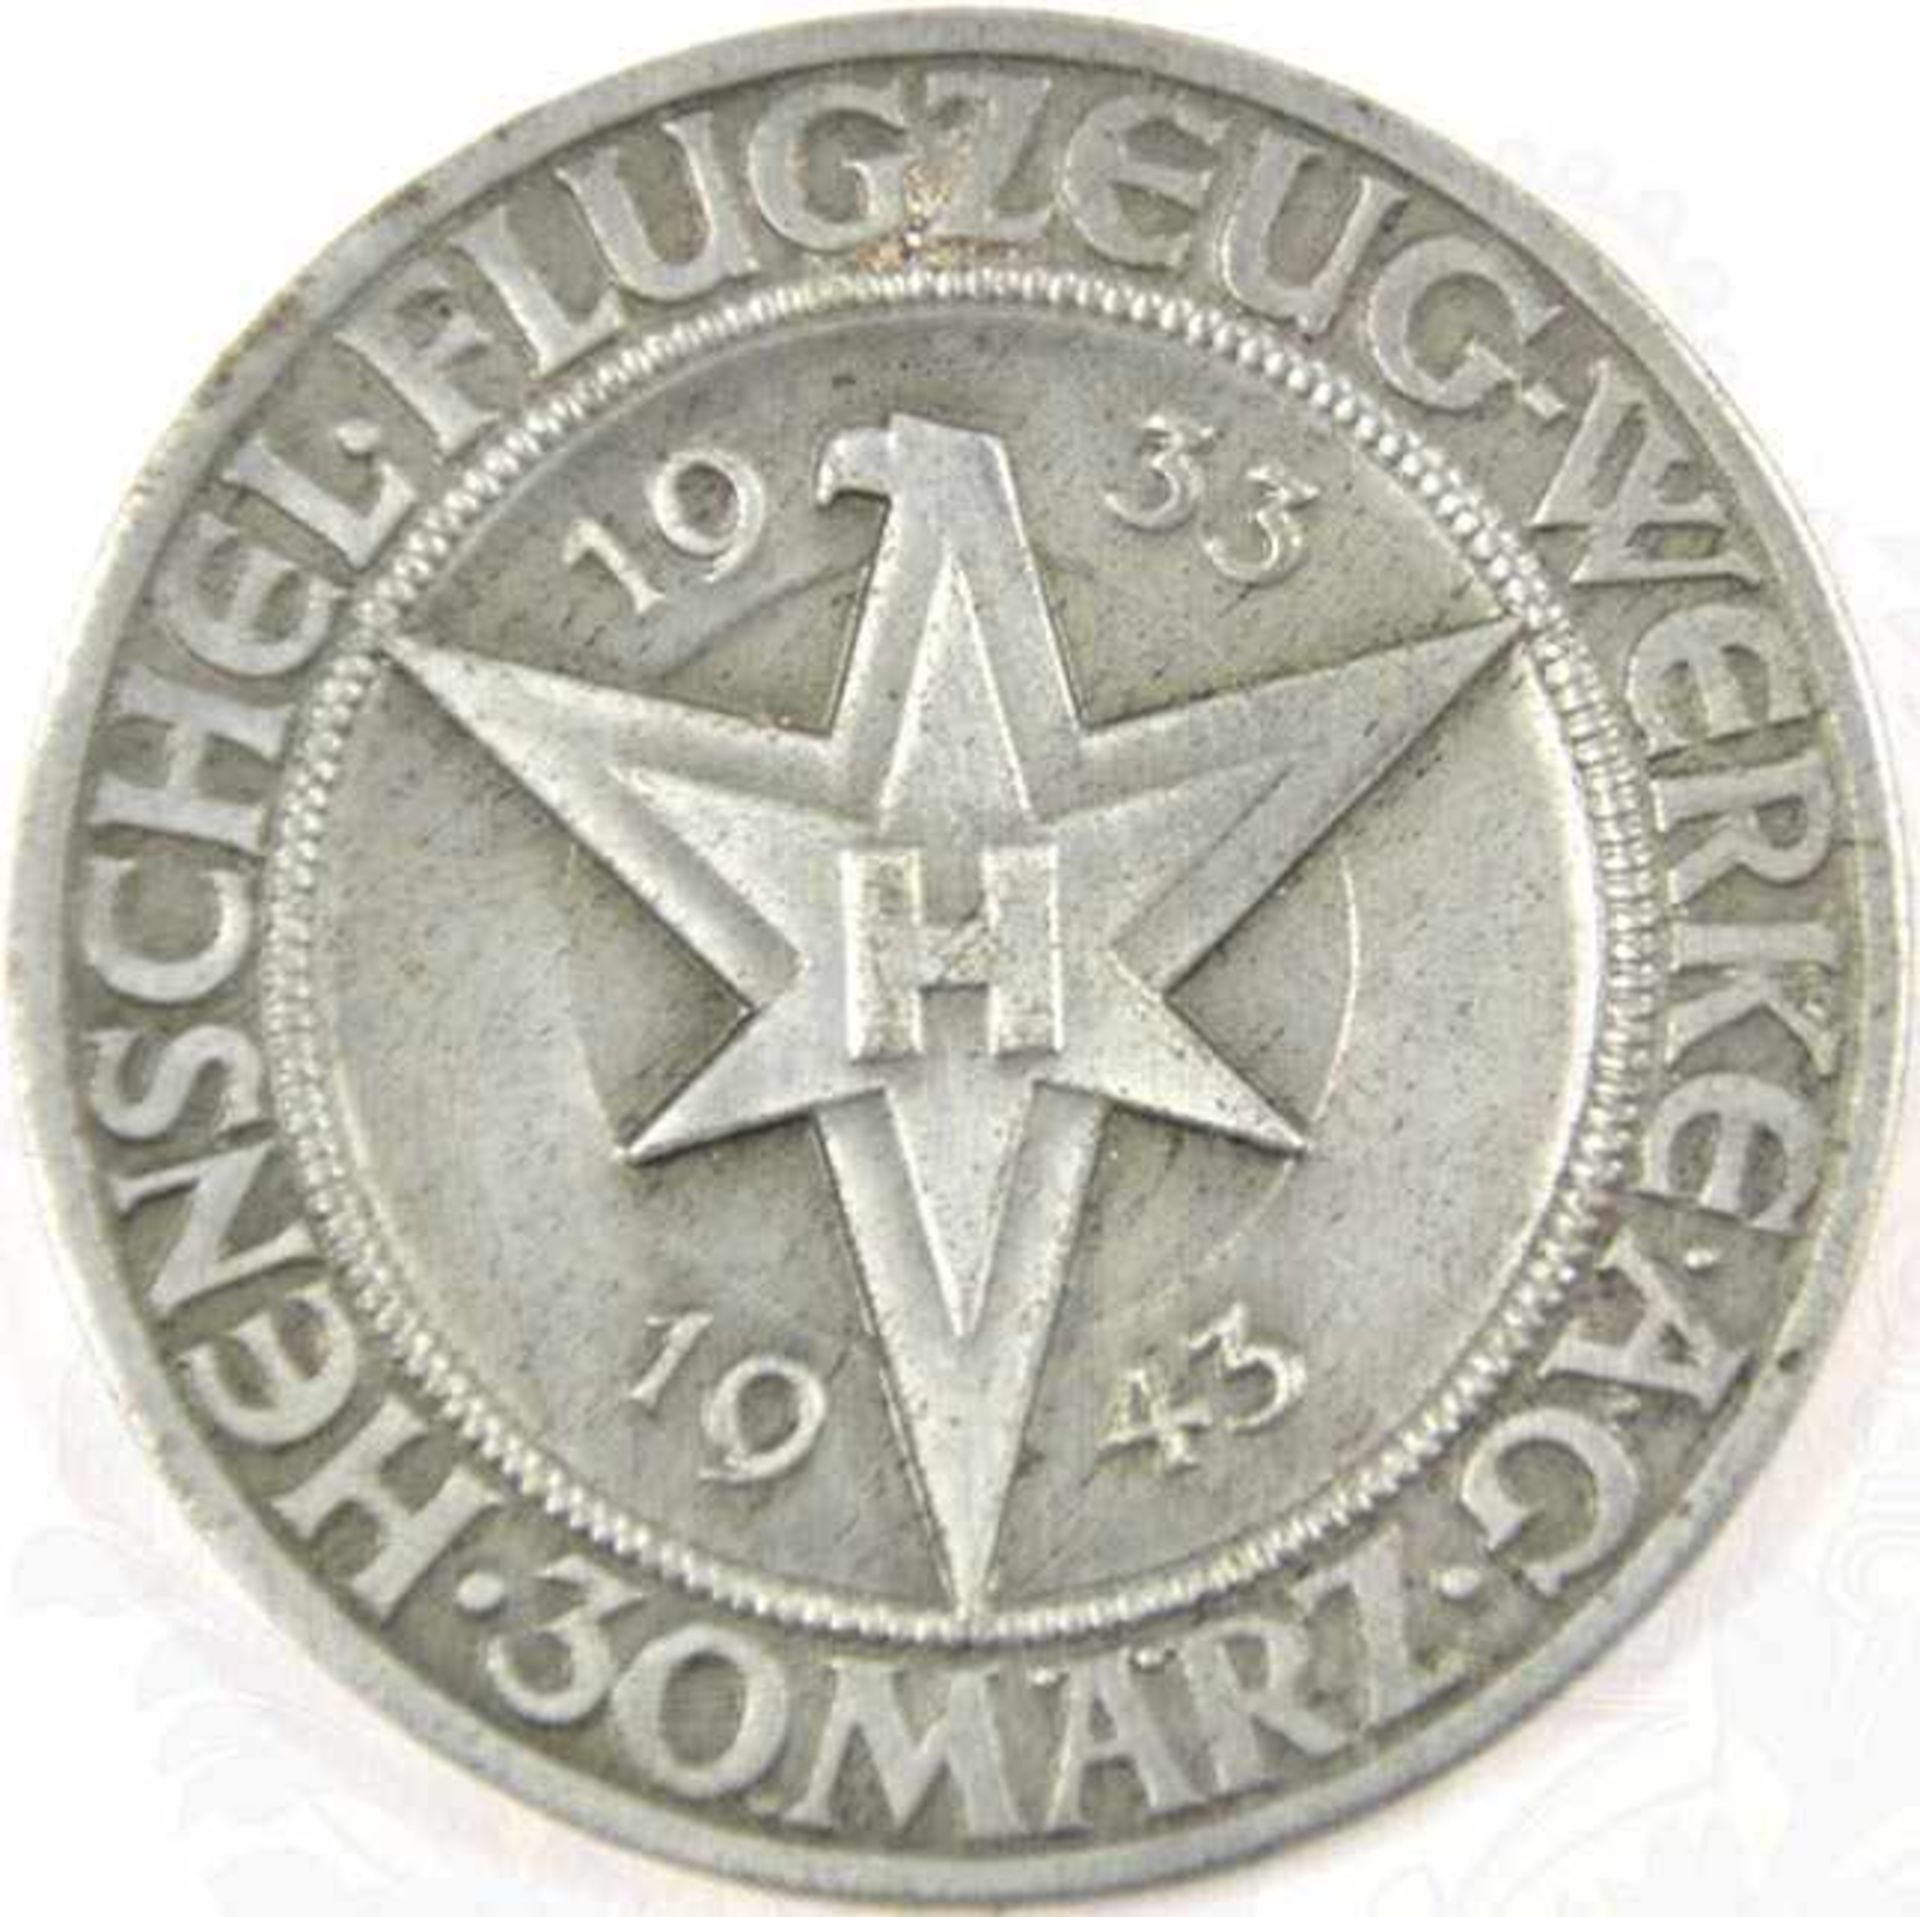 JUBILÄUMSMEDAILLE HENSCHEL FLUGZEUGWERKE, 1933-1943, Feinzink, Verslb. tls. vergangen, m. - Bild 2 aus 3